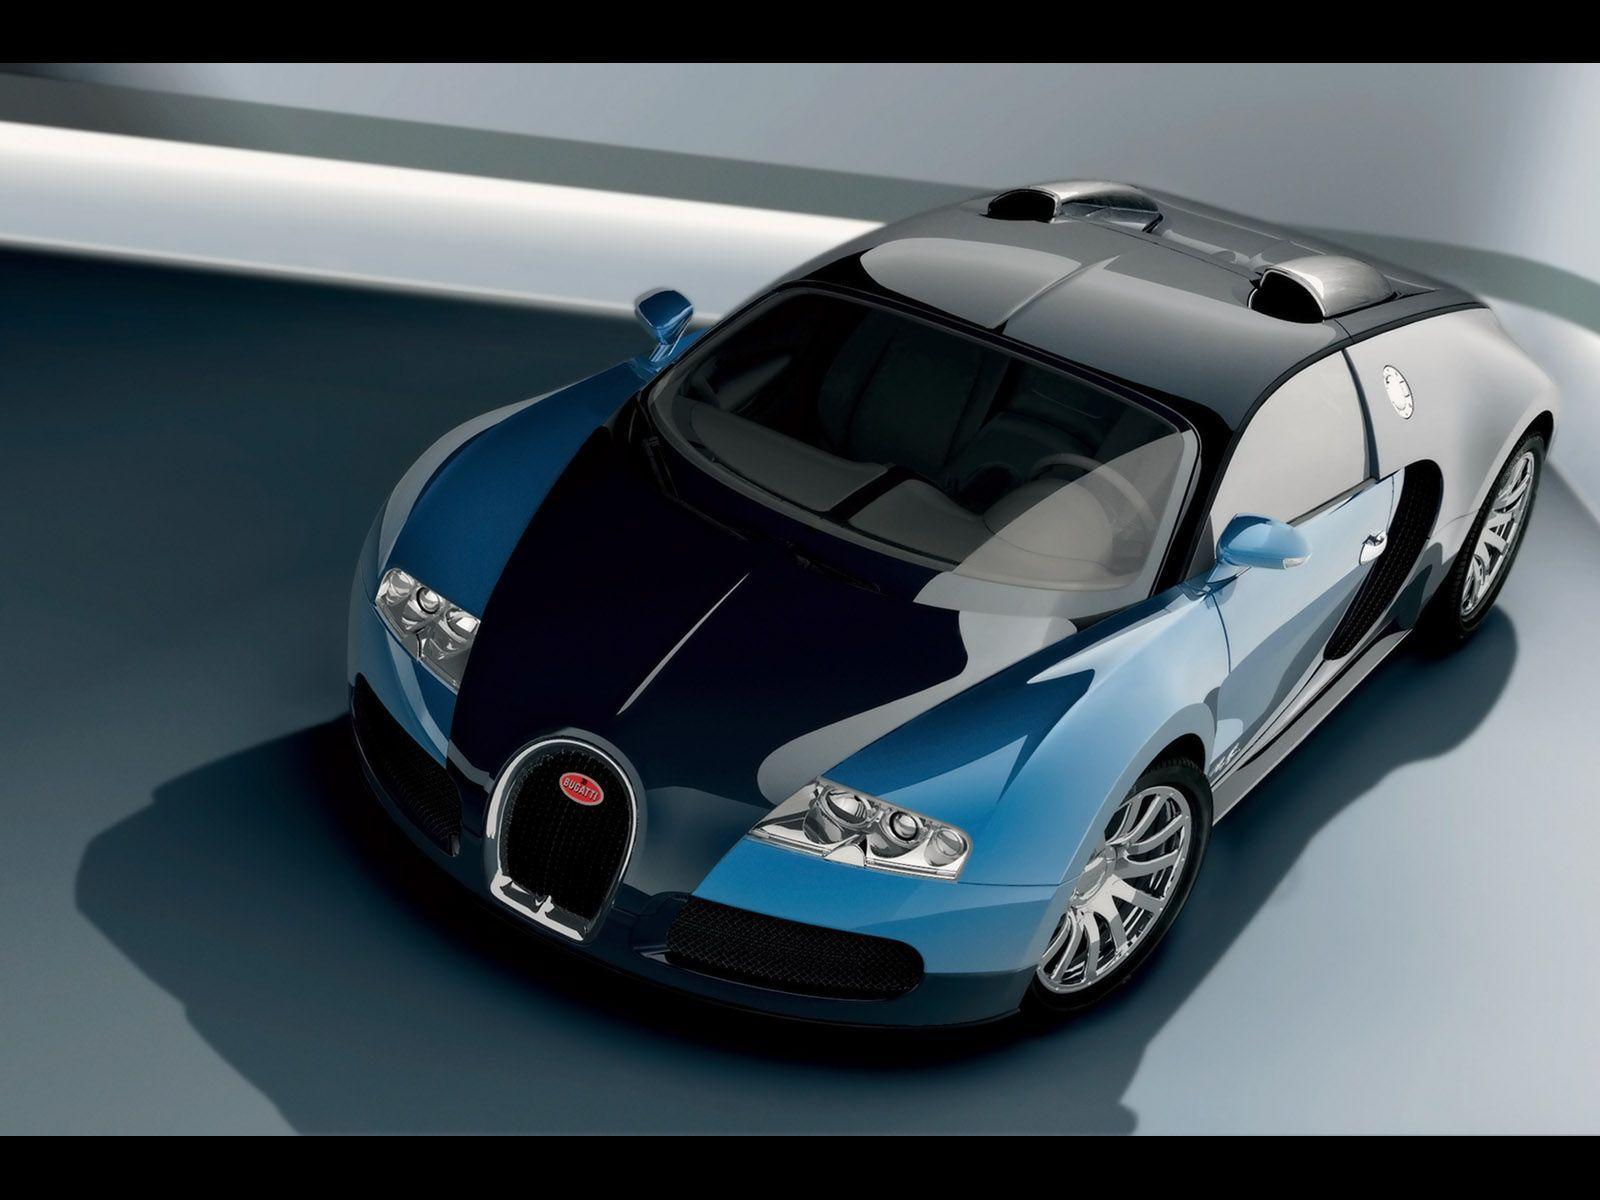 HD Bugatti Wallpaper For Free Download